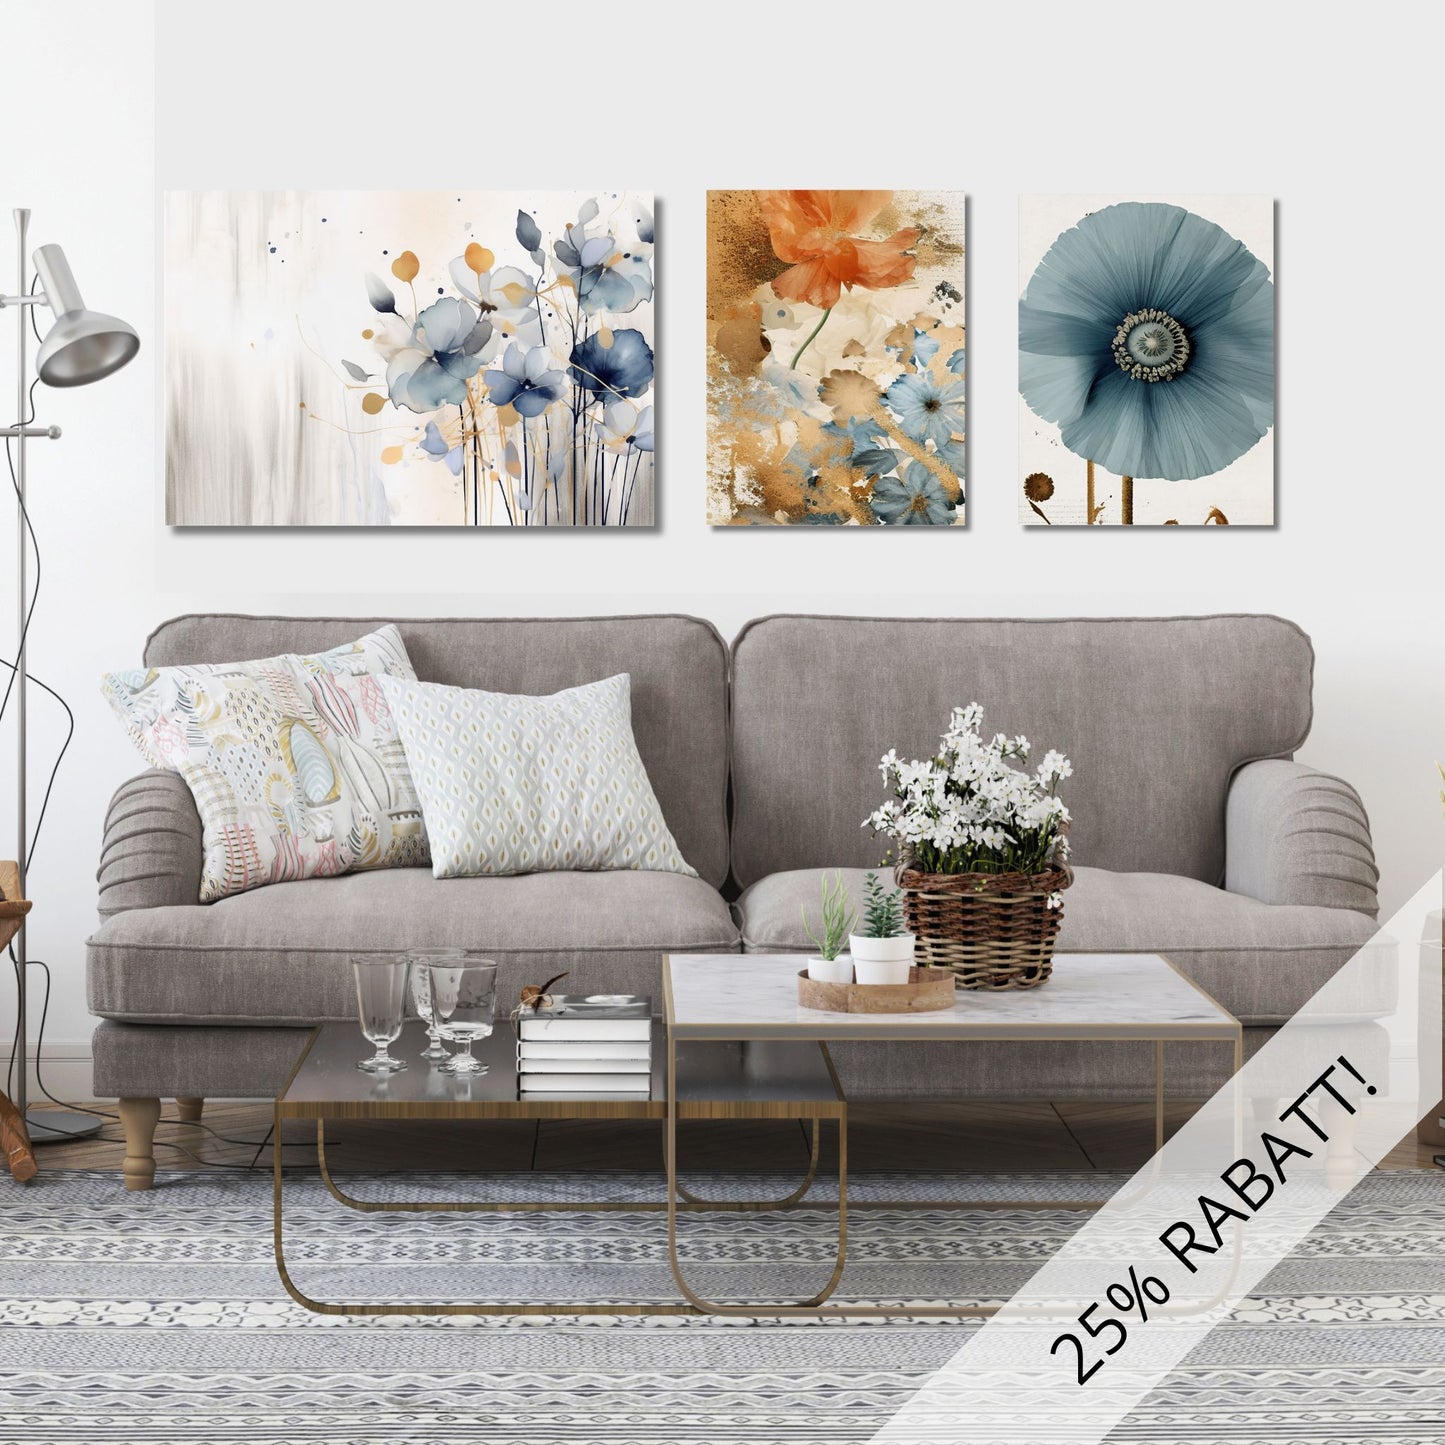 Galleri Abstract Floral består av 3 grafiske akvareller i duse rust, blå og beige fargetoner. Illustrasjonen viser motivene på lerret som henger over en sofa.